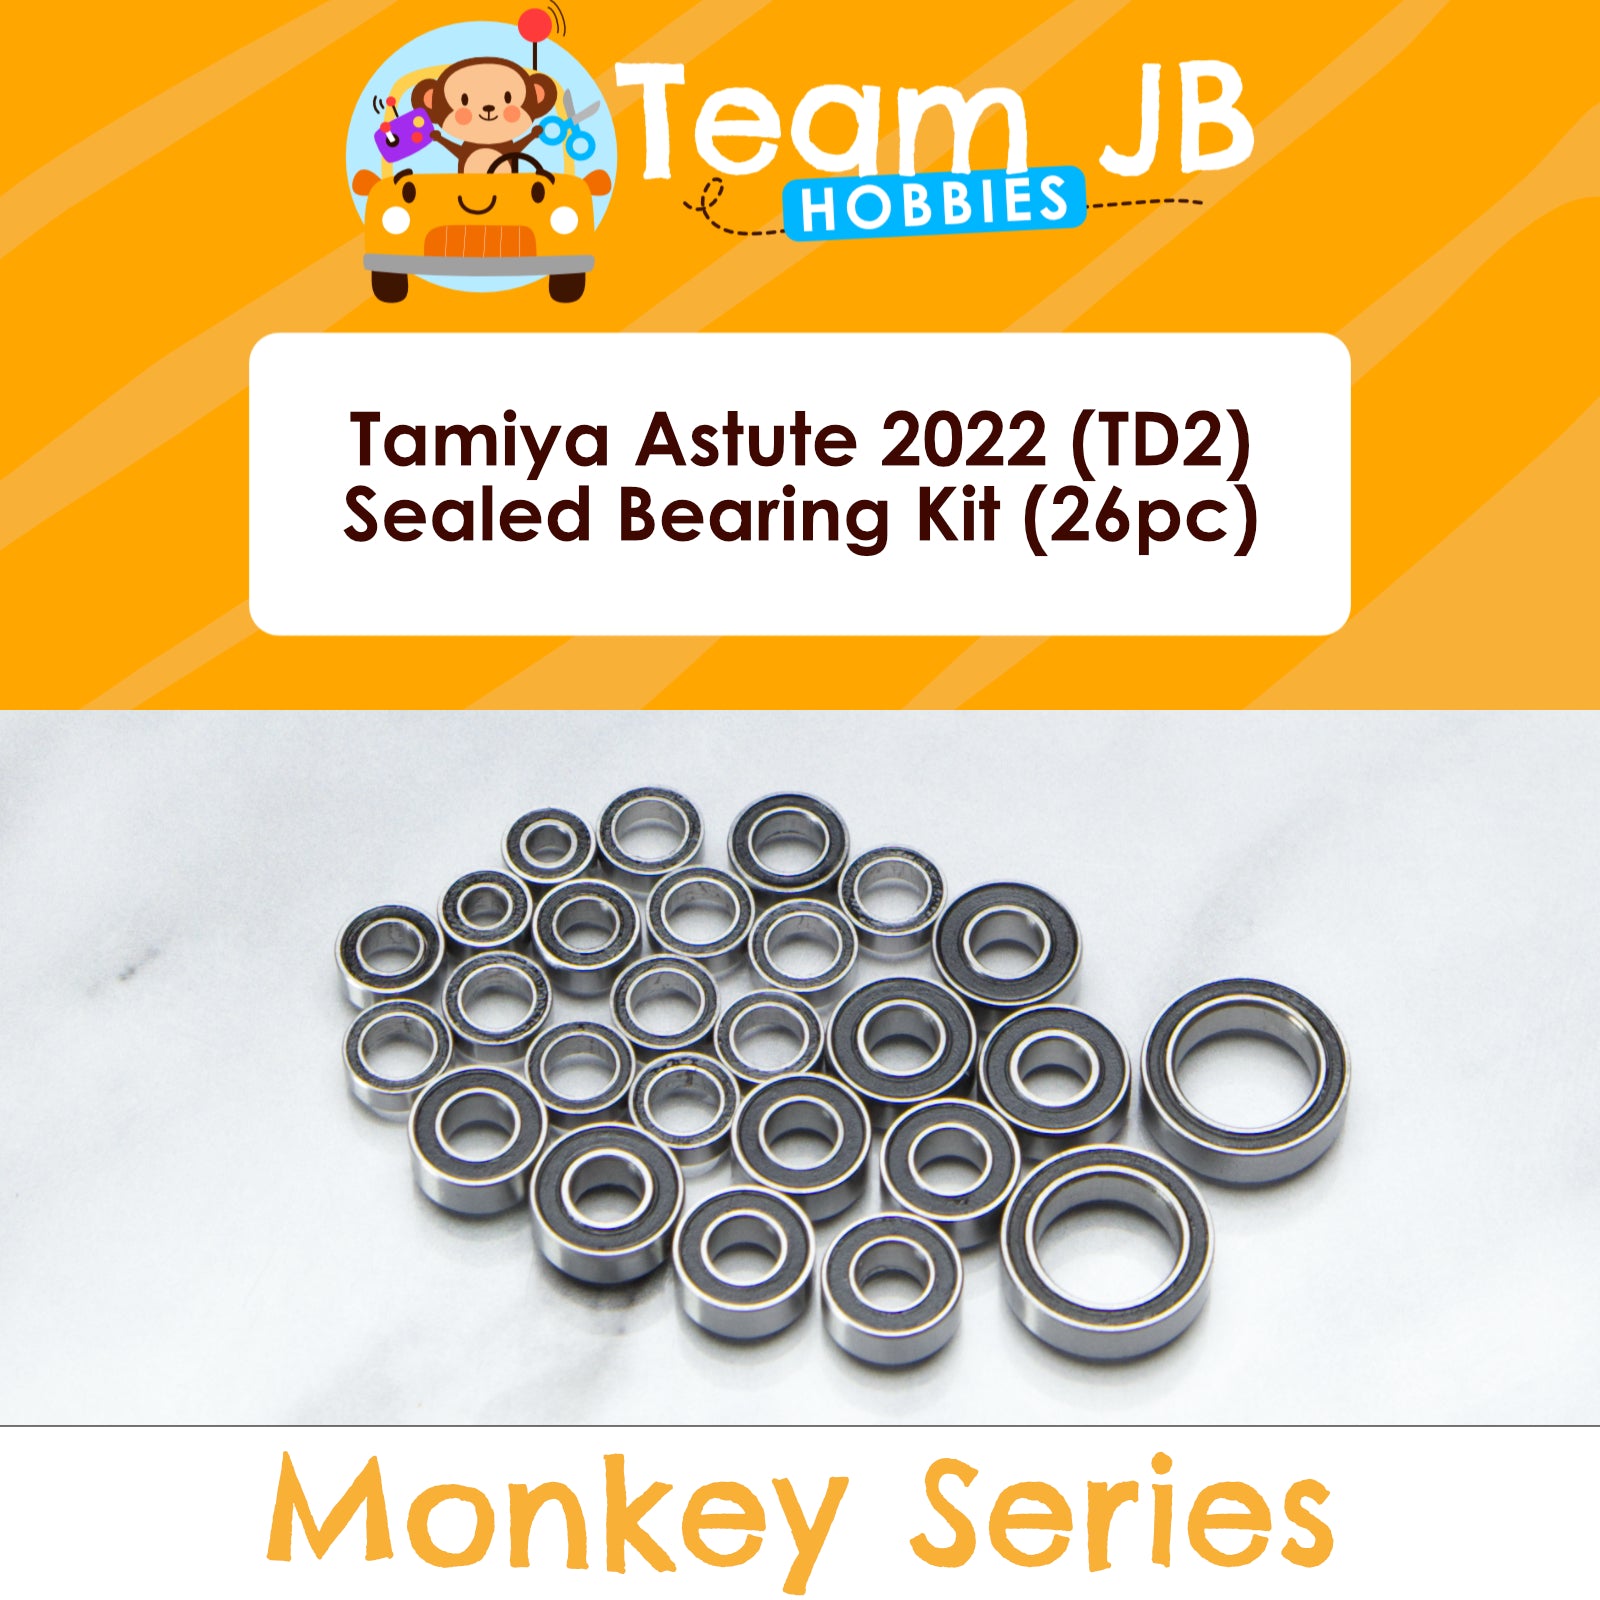 Tamiya Astute 2022 (TD2) - Sealed Bearing Kit